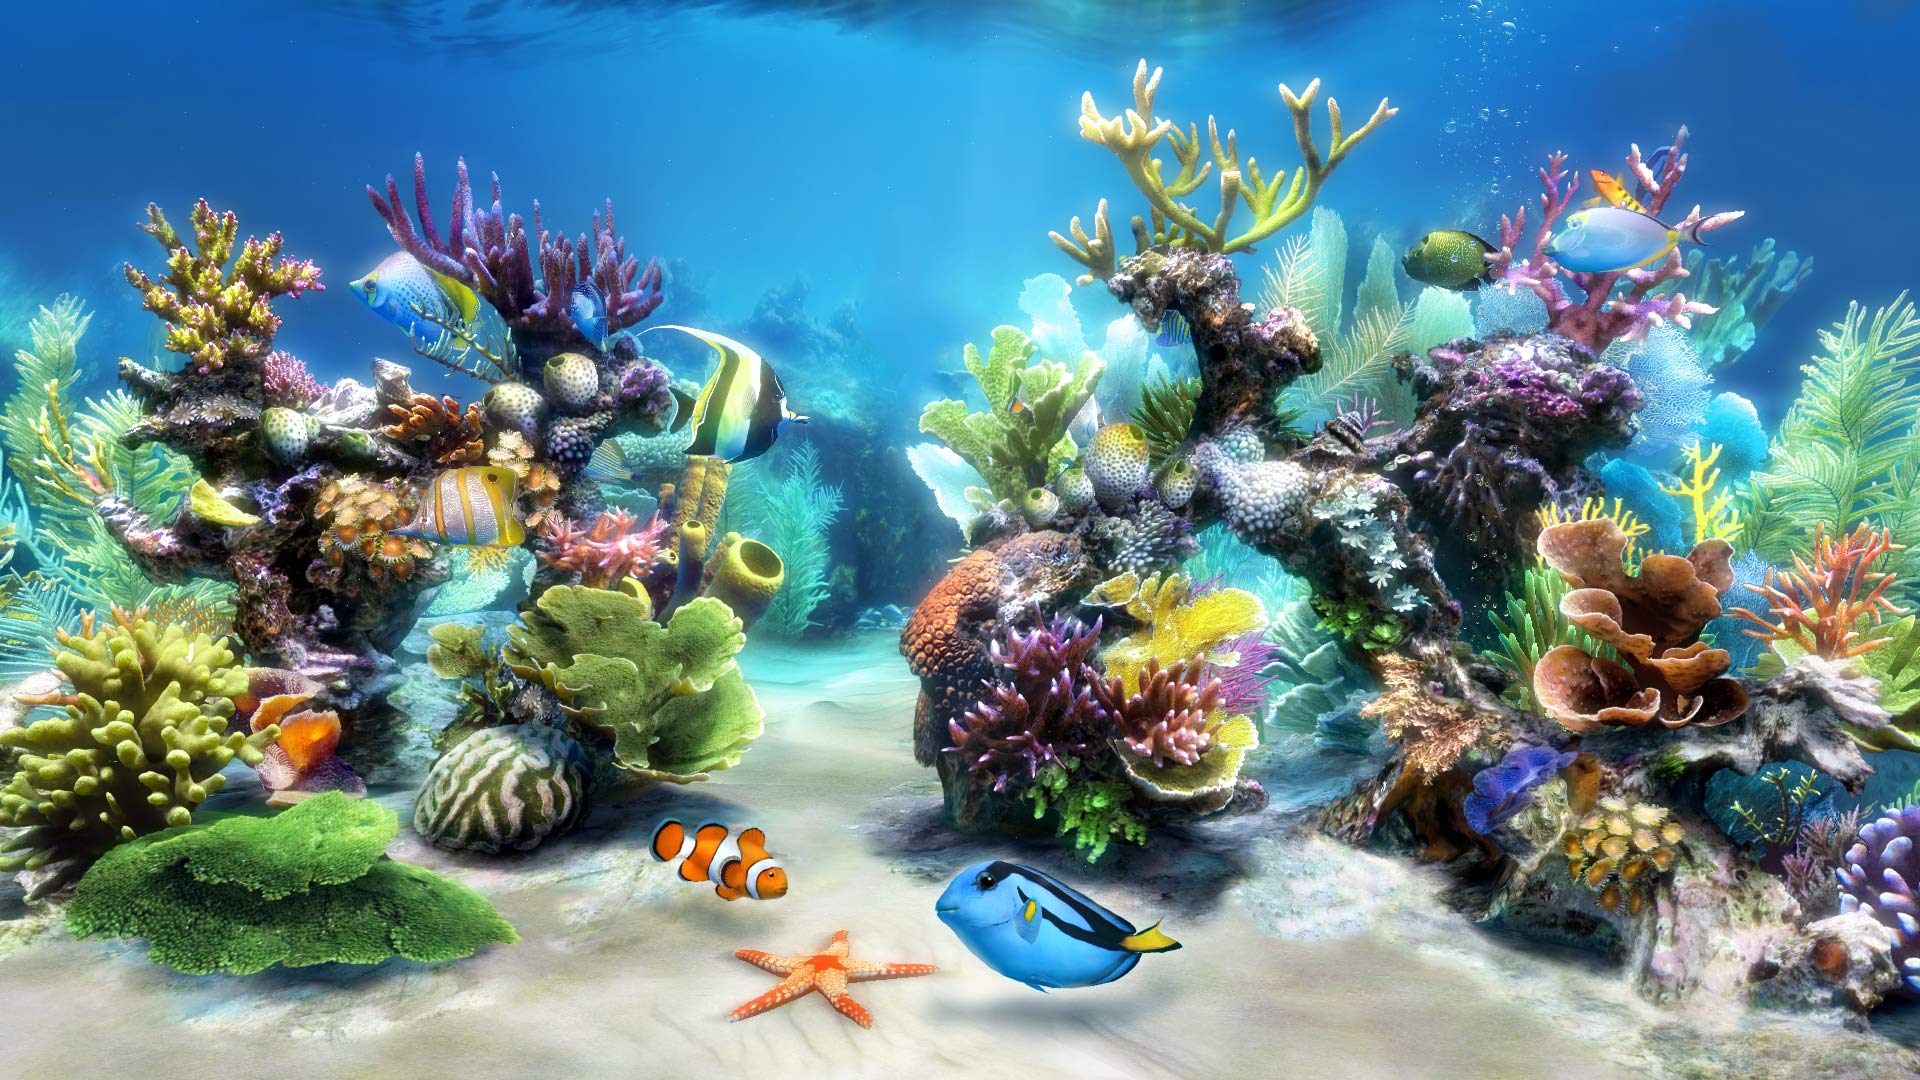 Coral Reef Aquarium 3d Animated Wallpaper Image Num 55